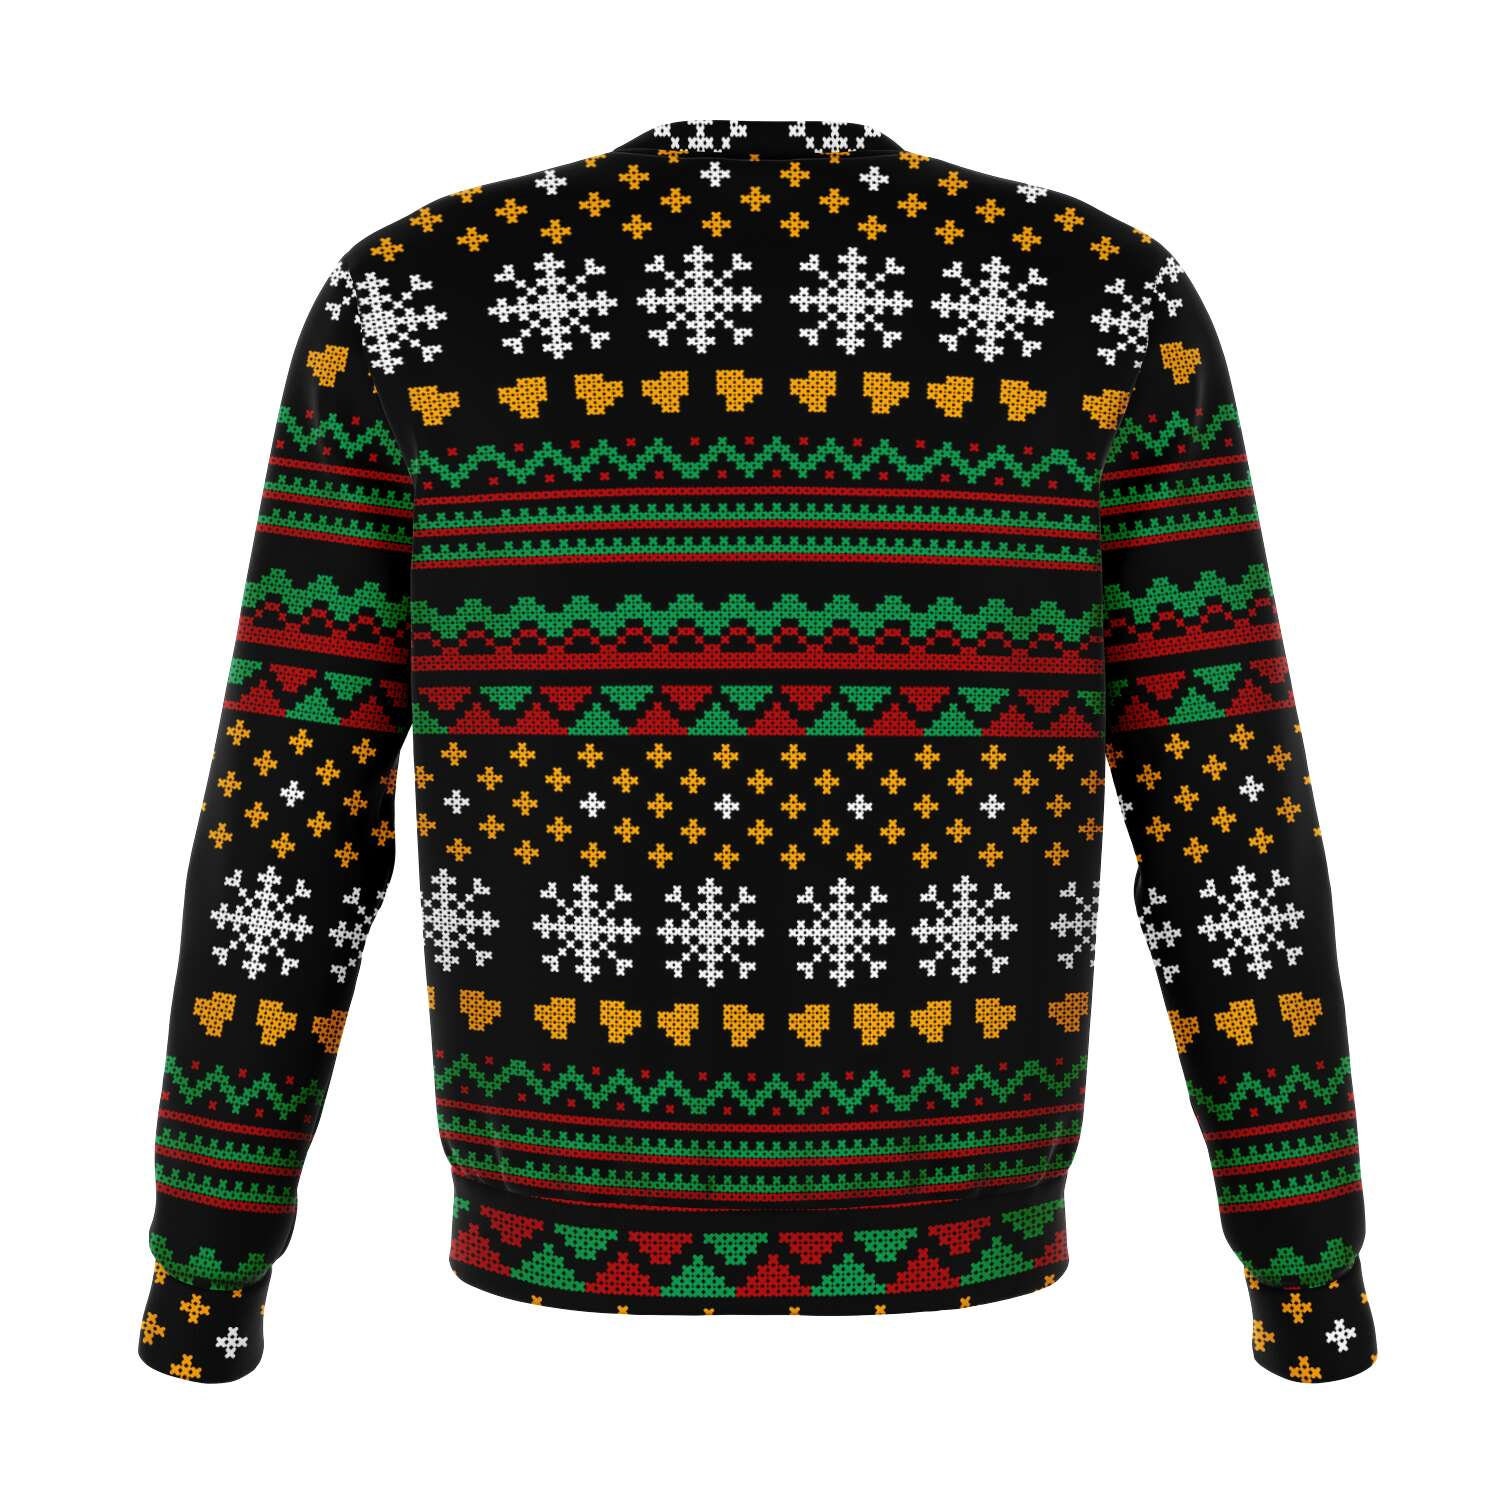 Discover Funny Gym Lifting Christmas Sweatshirt, Ugly Christmas Sweater